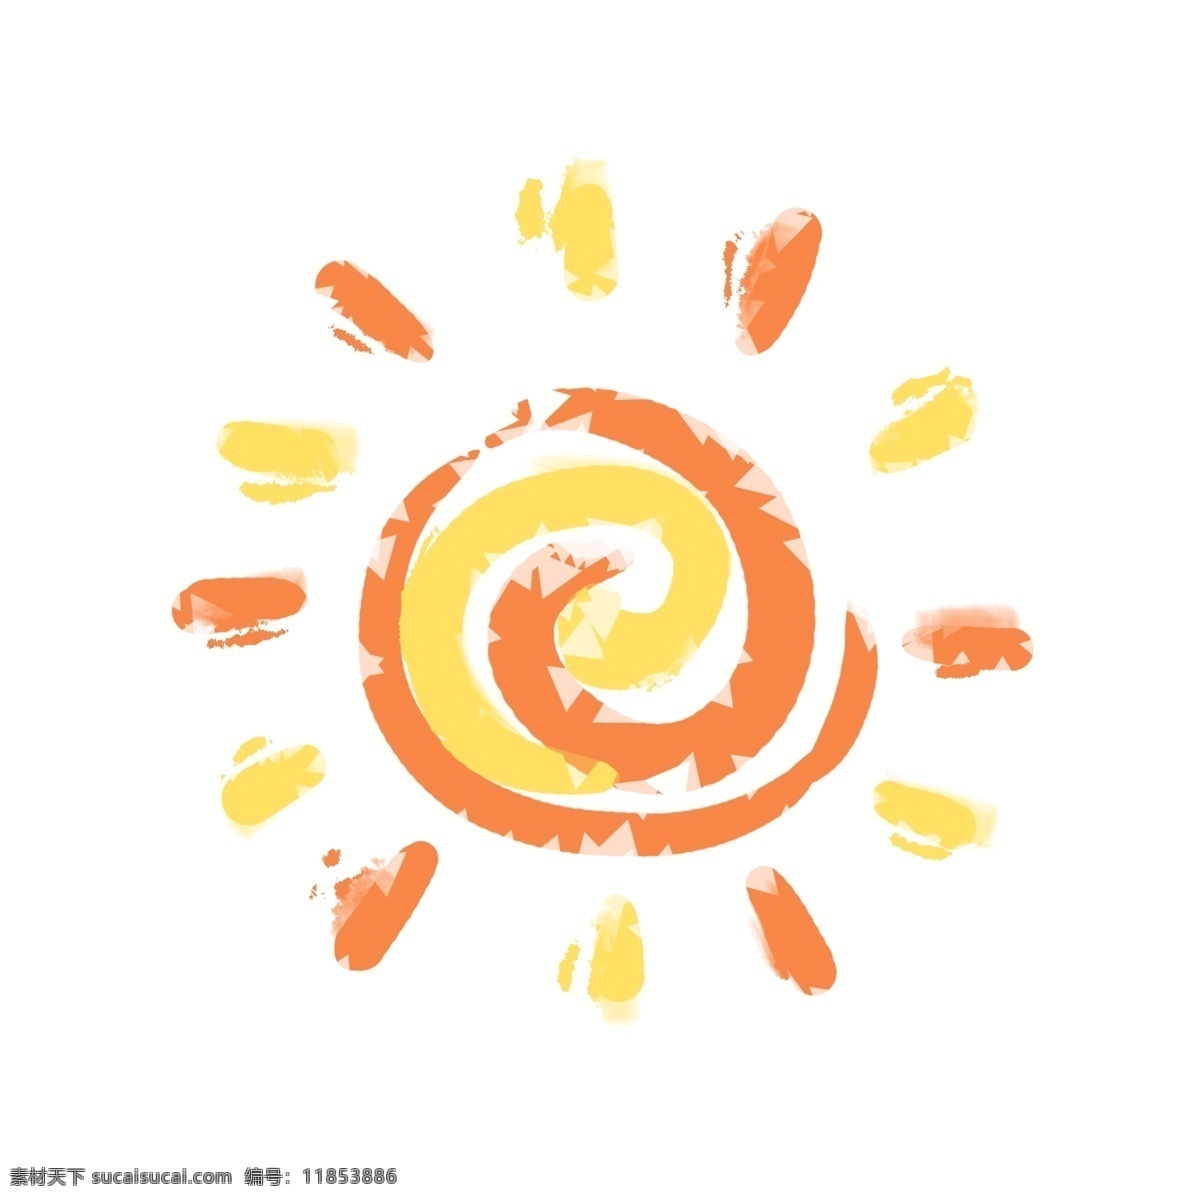 橙色 黄色 卡通 太阳 图标 卡通图标 夏季主题 夏日旅游 简约 夏日漫画 图案 手绘 花纹 装饰